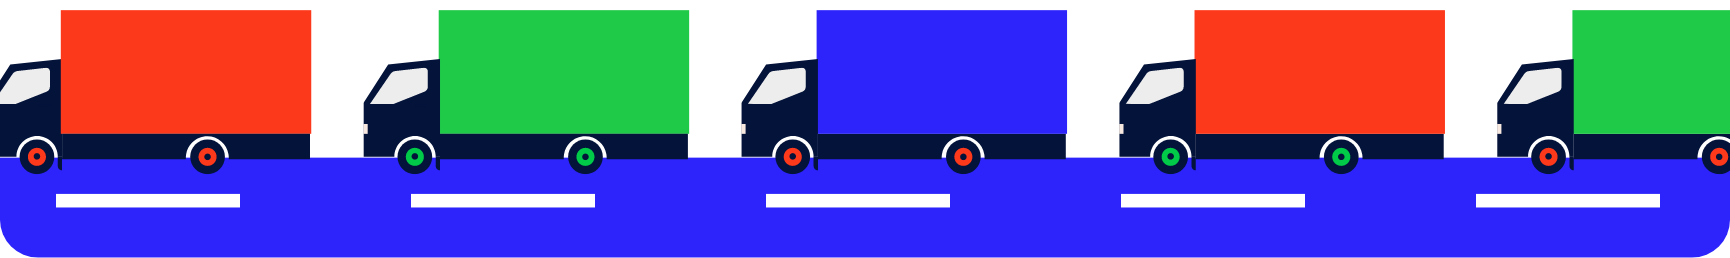 Trucks graphic